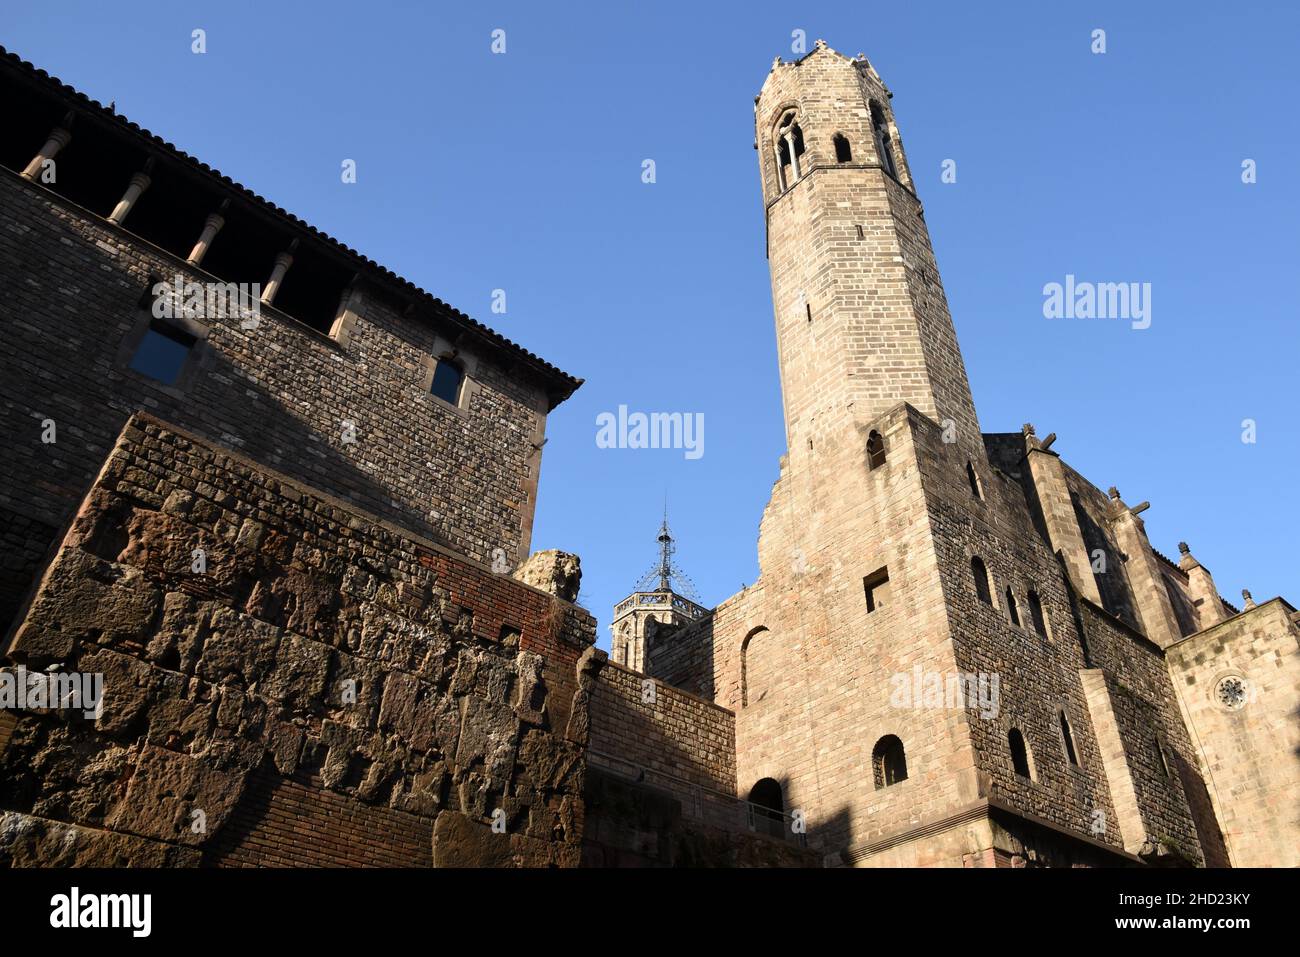 Espagne, Barcelone, l'église Sainte Agathe avec sa tour gothique et les vestiges de l'ancienne muraille romaine de la ville. Foto Stock